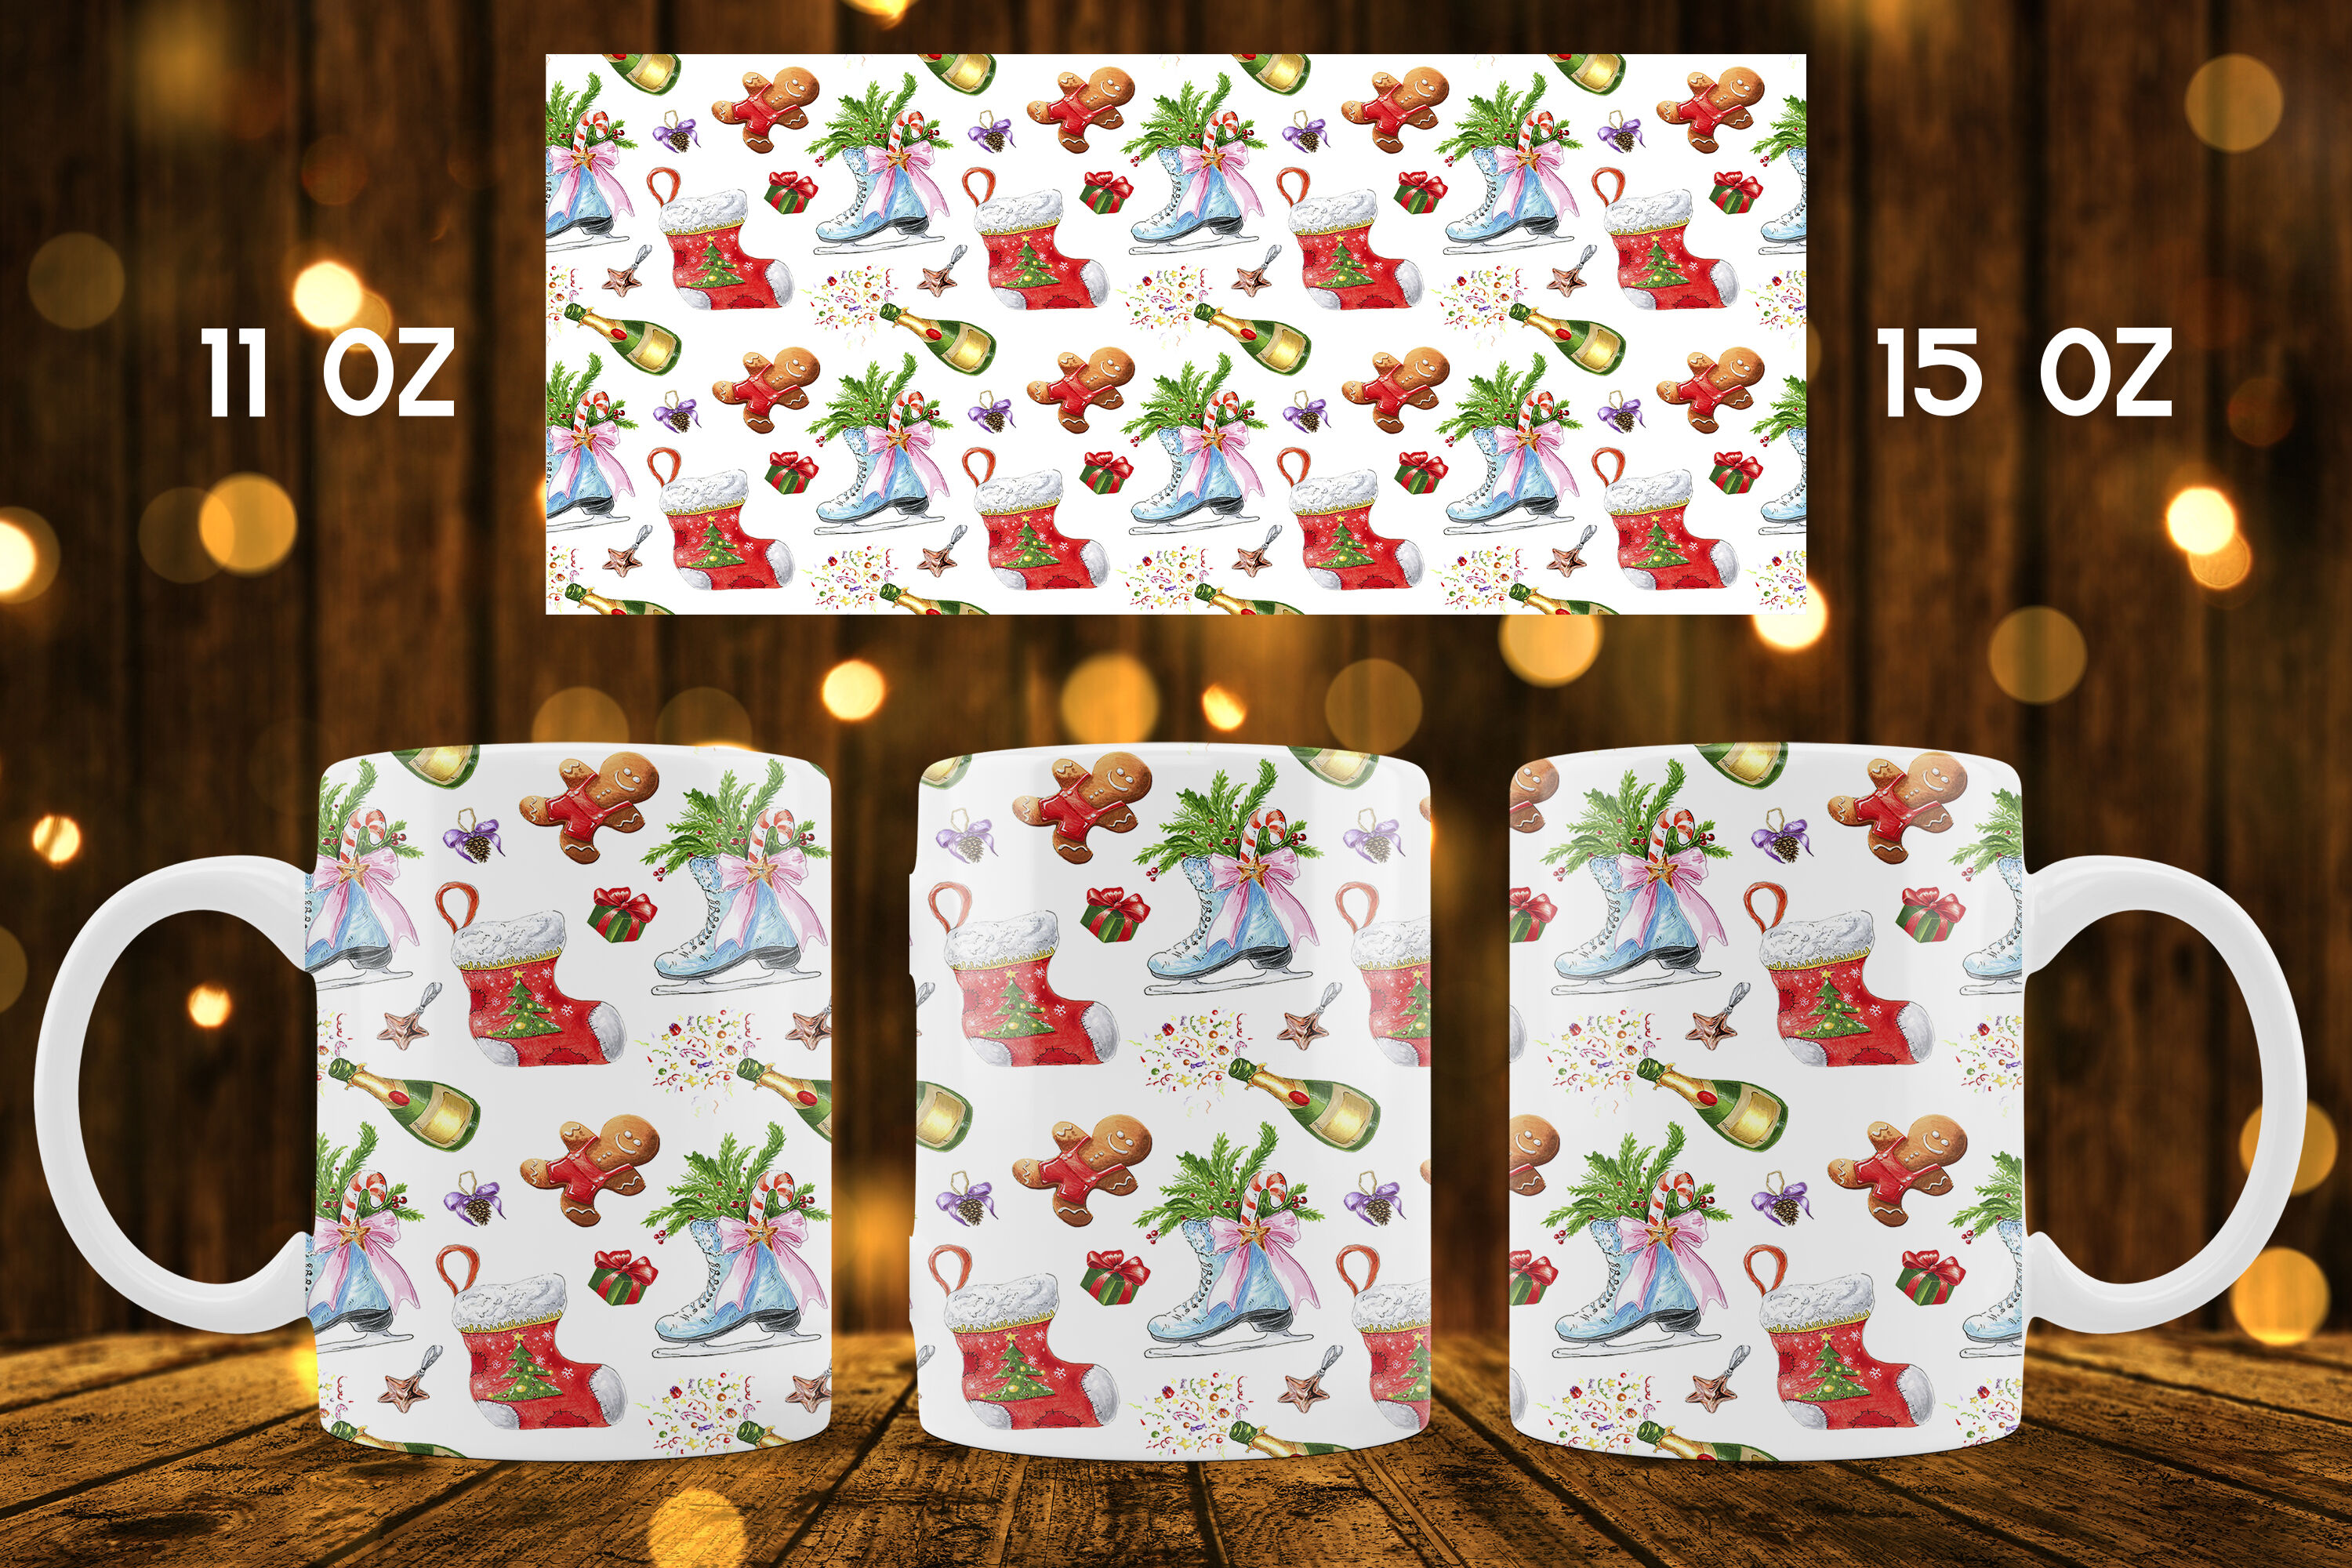 11oz and 15oz Sublimation Designs for Mugs Christmas mug Template Mug Design Sublimation Mug PNG 300DPI Digital Print on Christmas